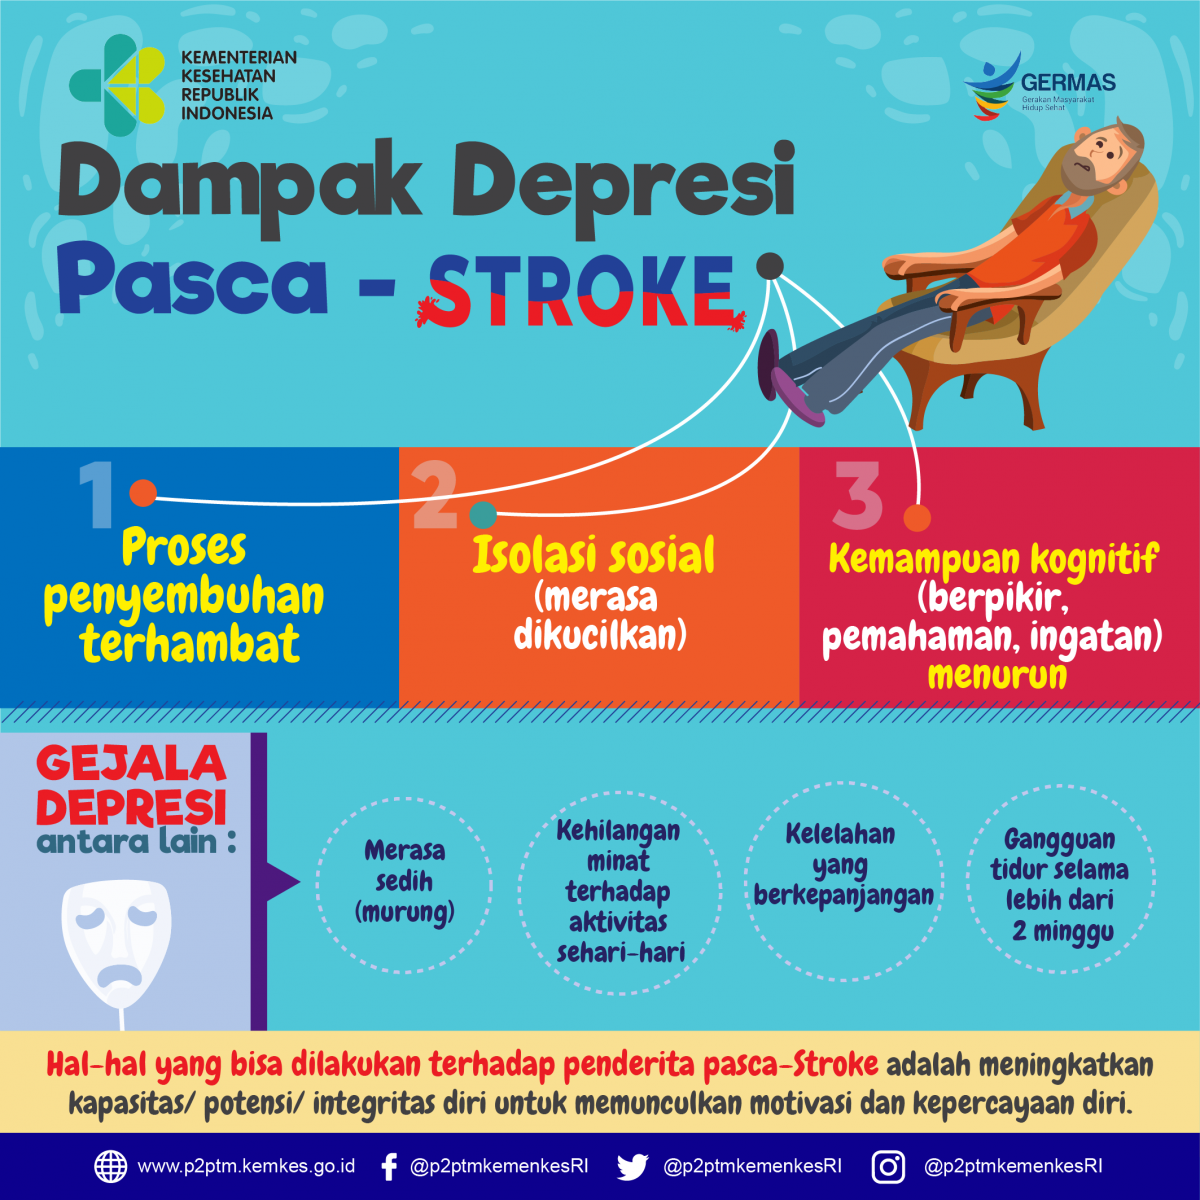 Apa saja dampak depresi pasca stroke